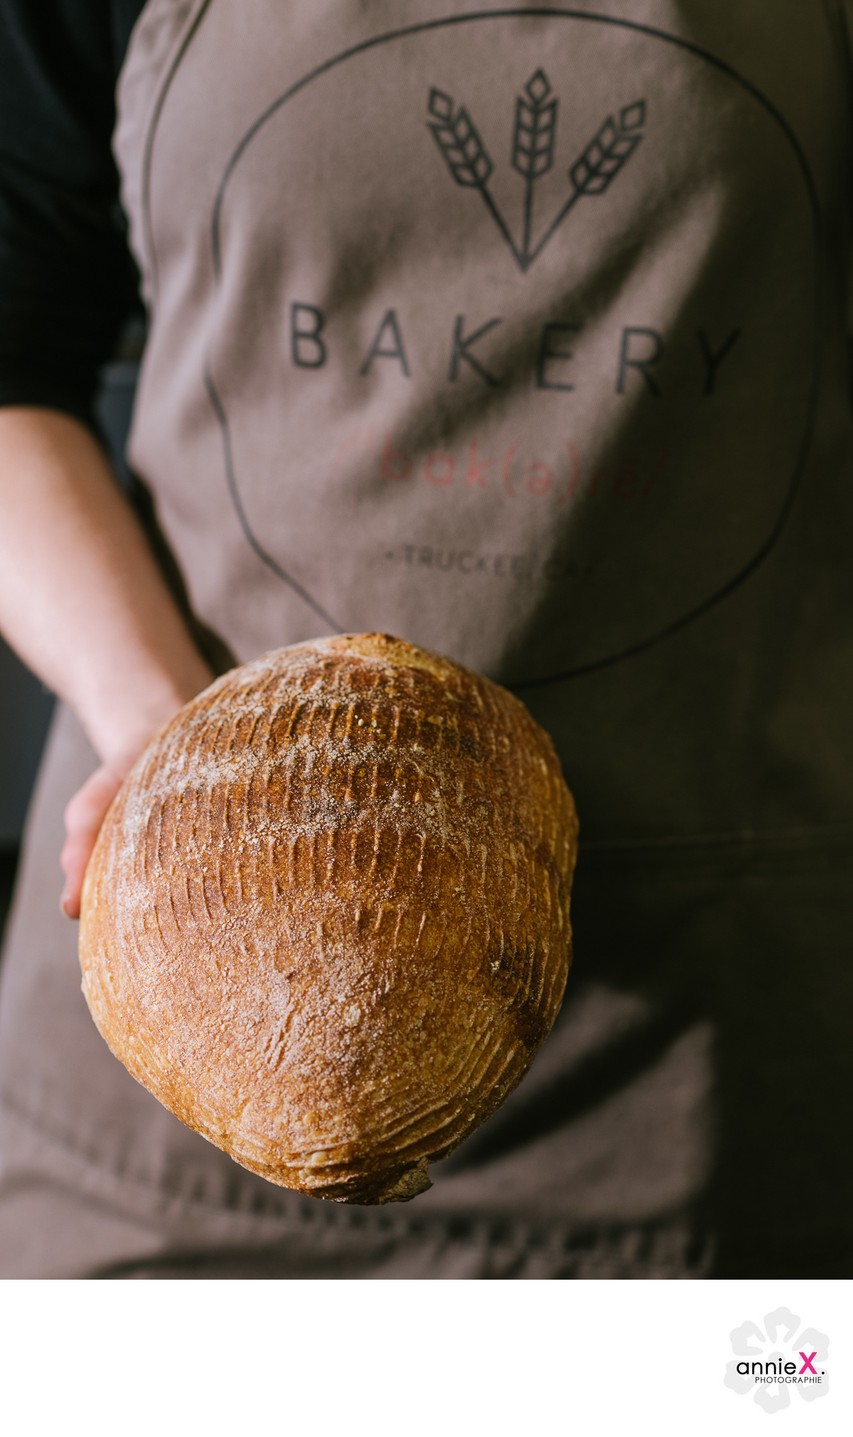 Bread maker holding loaf